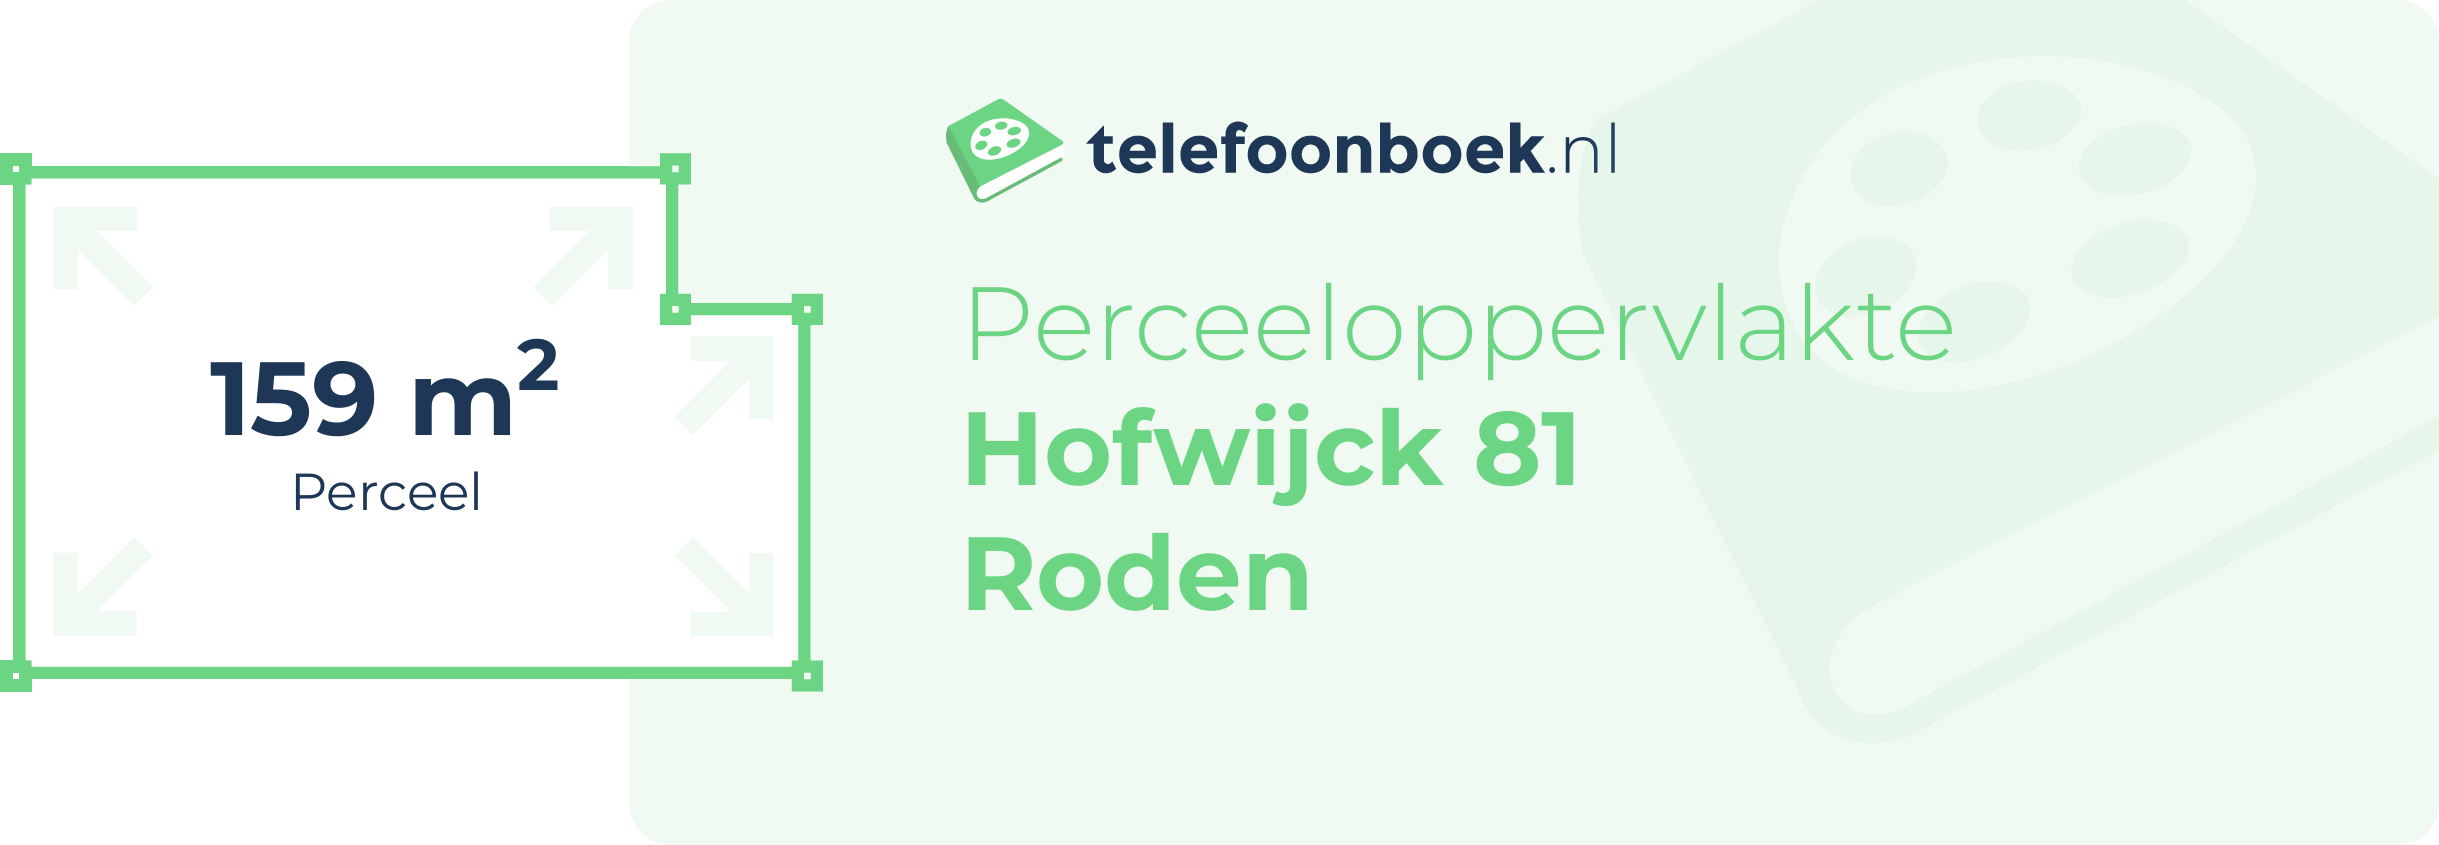 Perceeloppervlakte Hofwijck 81 Roden